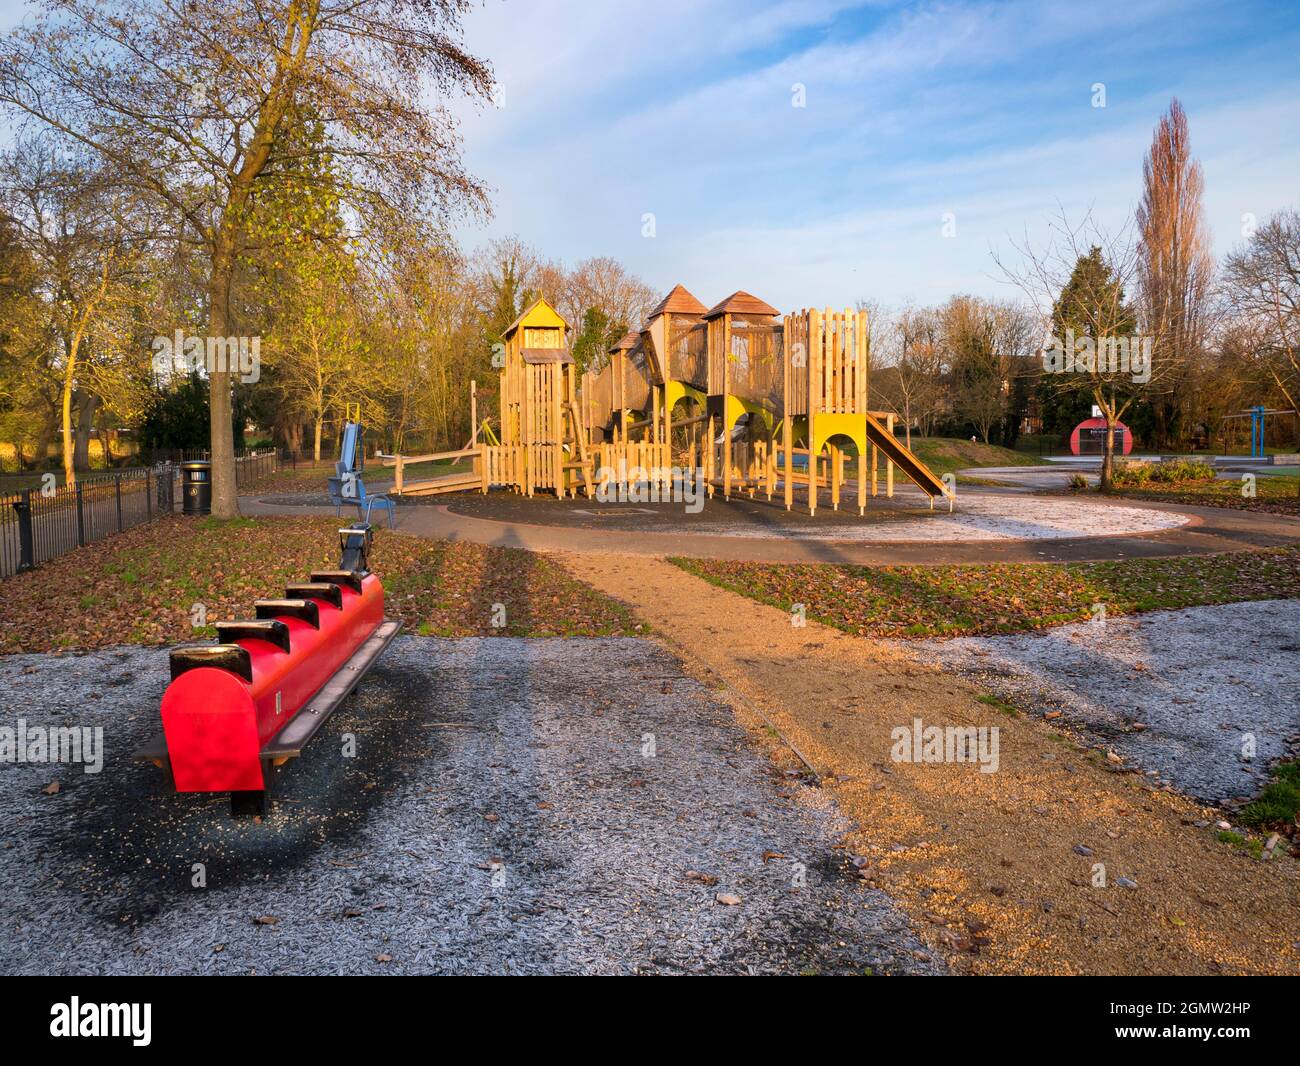 Abingdon, England - 14. Dezember 2018 Ein Spielplatz ohne Kinder kann ein ziemlich unheimlicher Ort sein. Hier sehen wir schon früh eines in Abbey Fields, Abingdon Stockfoto